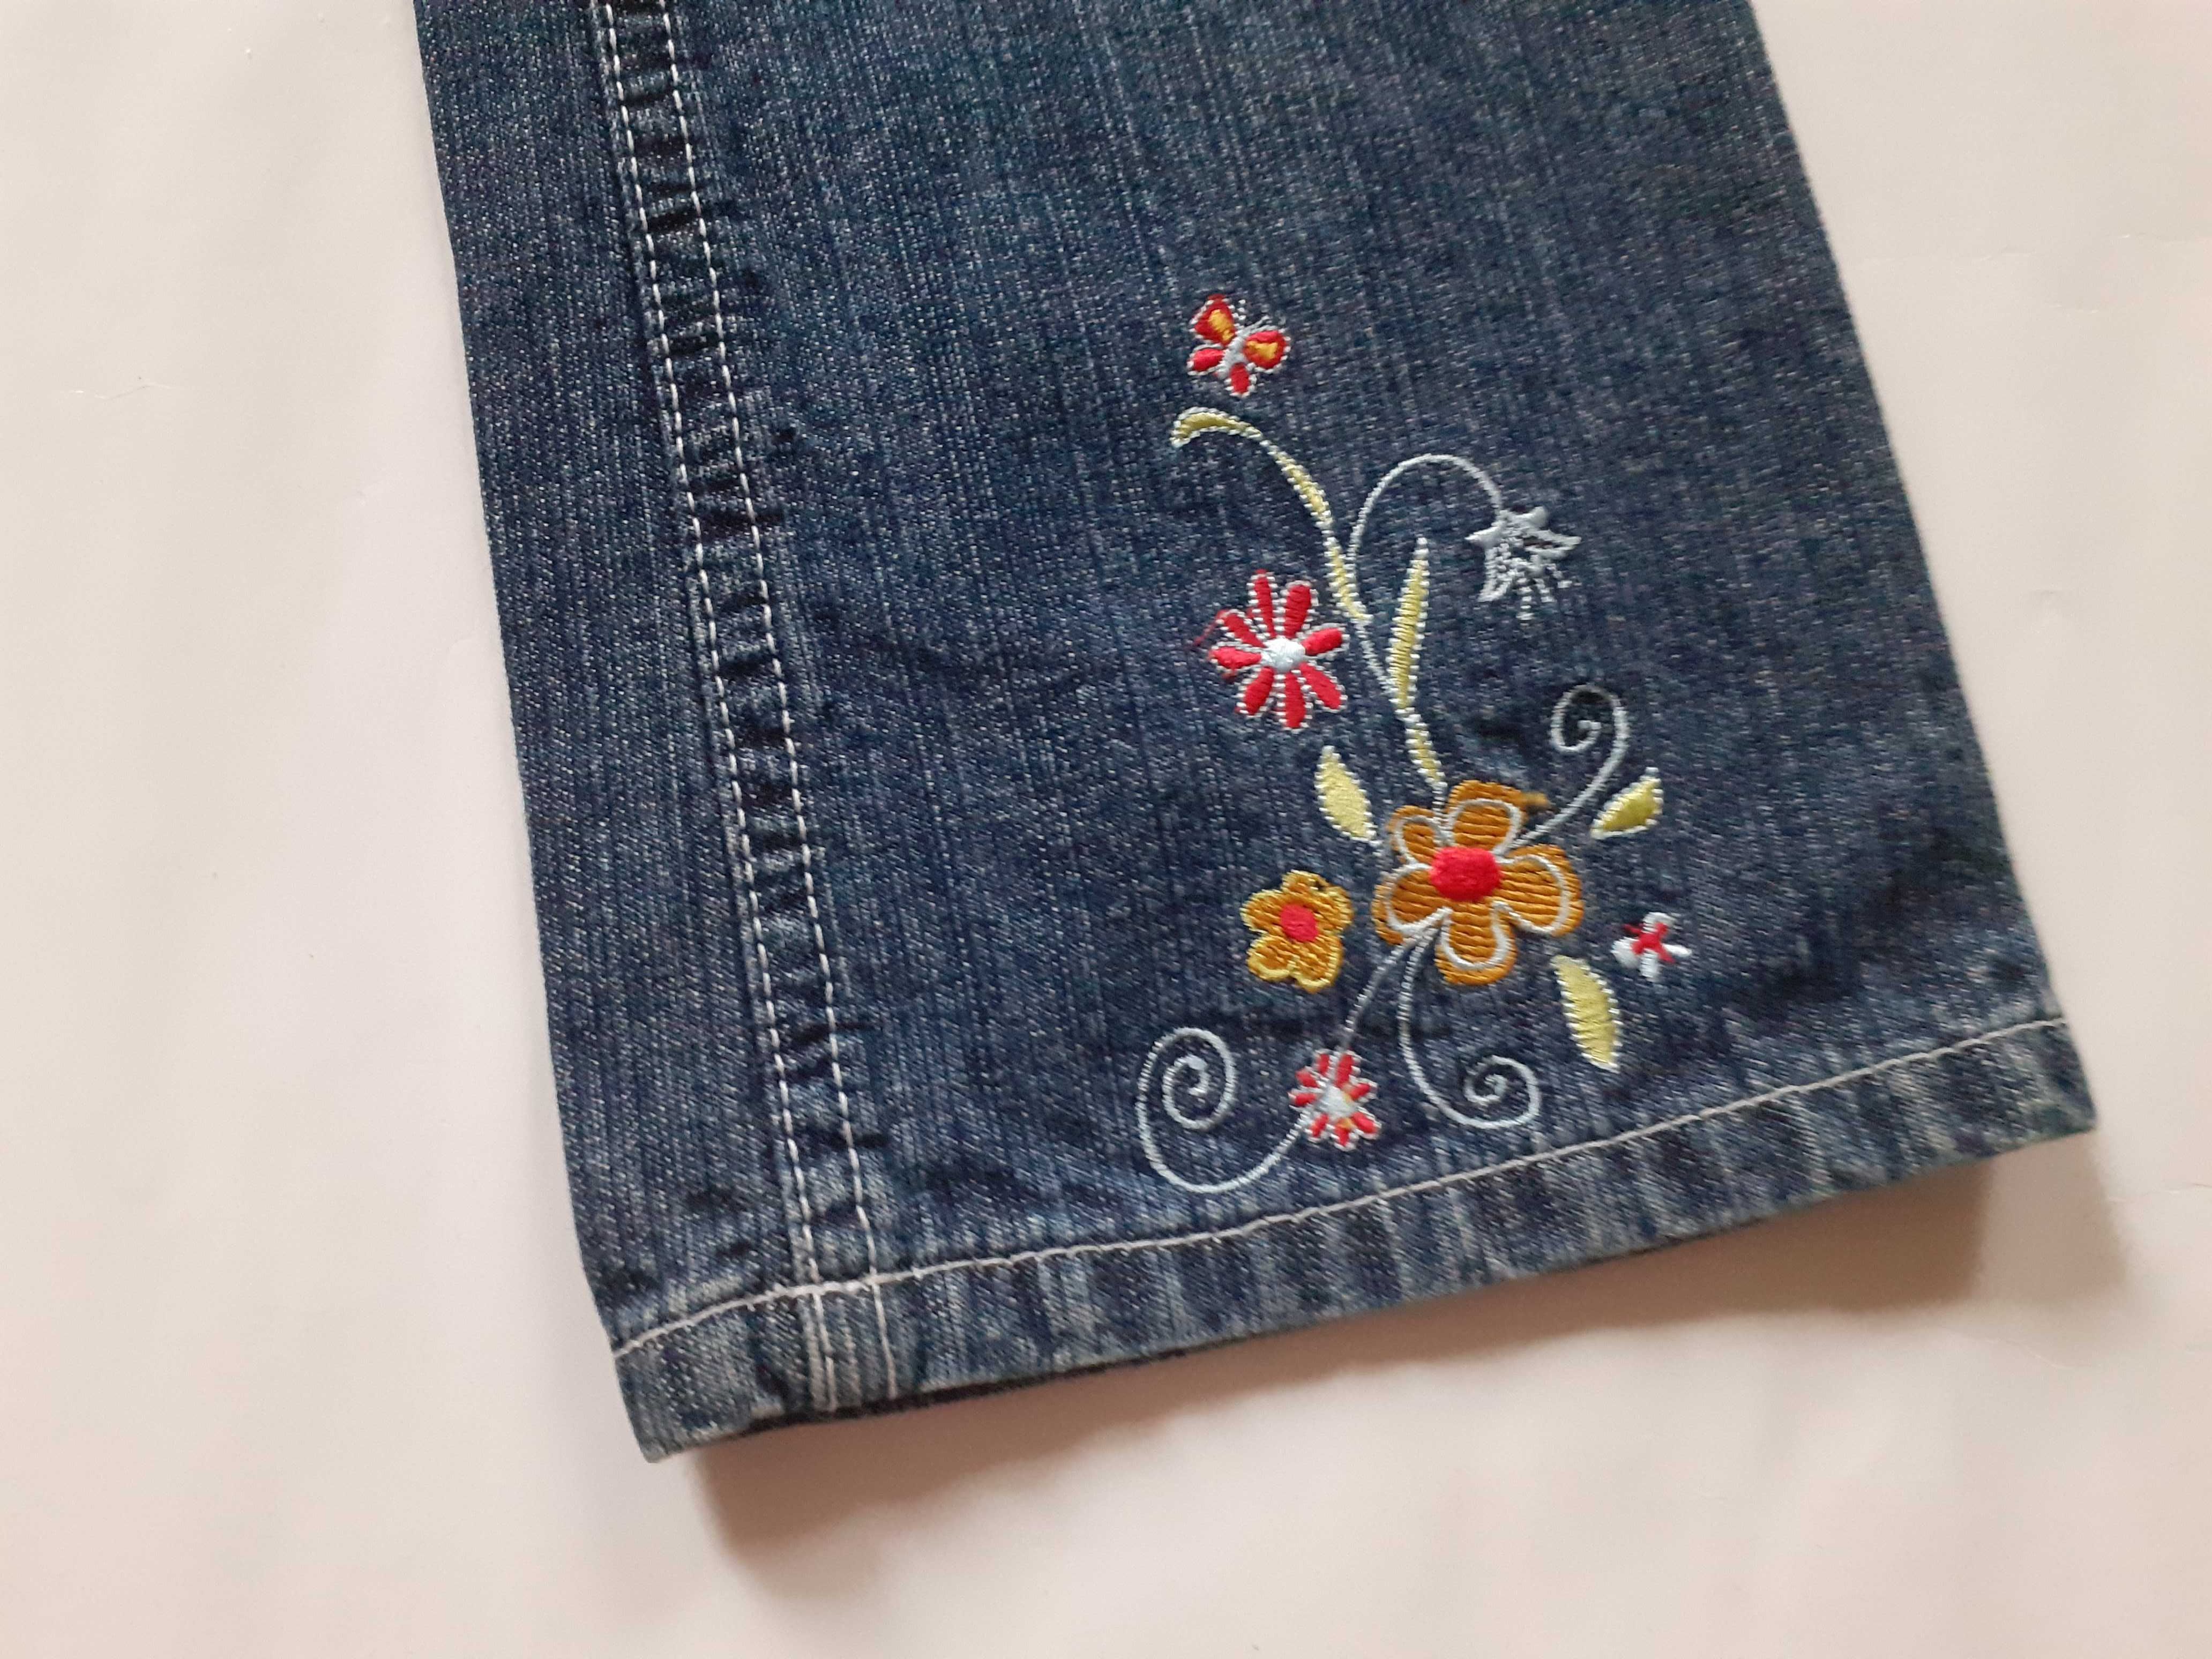 Spodnie dziewczęce - jeans - r. 116